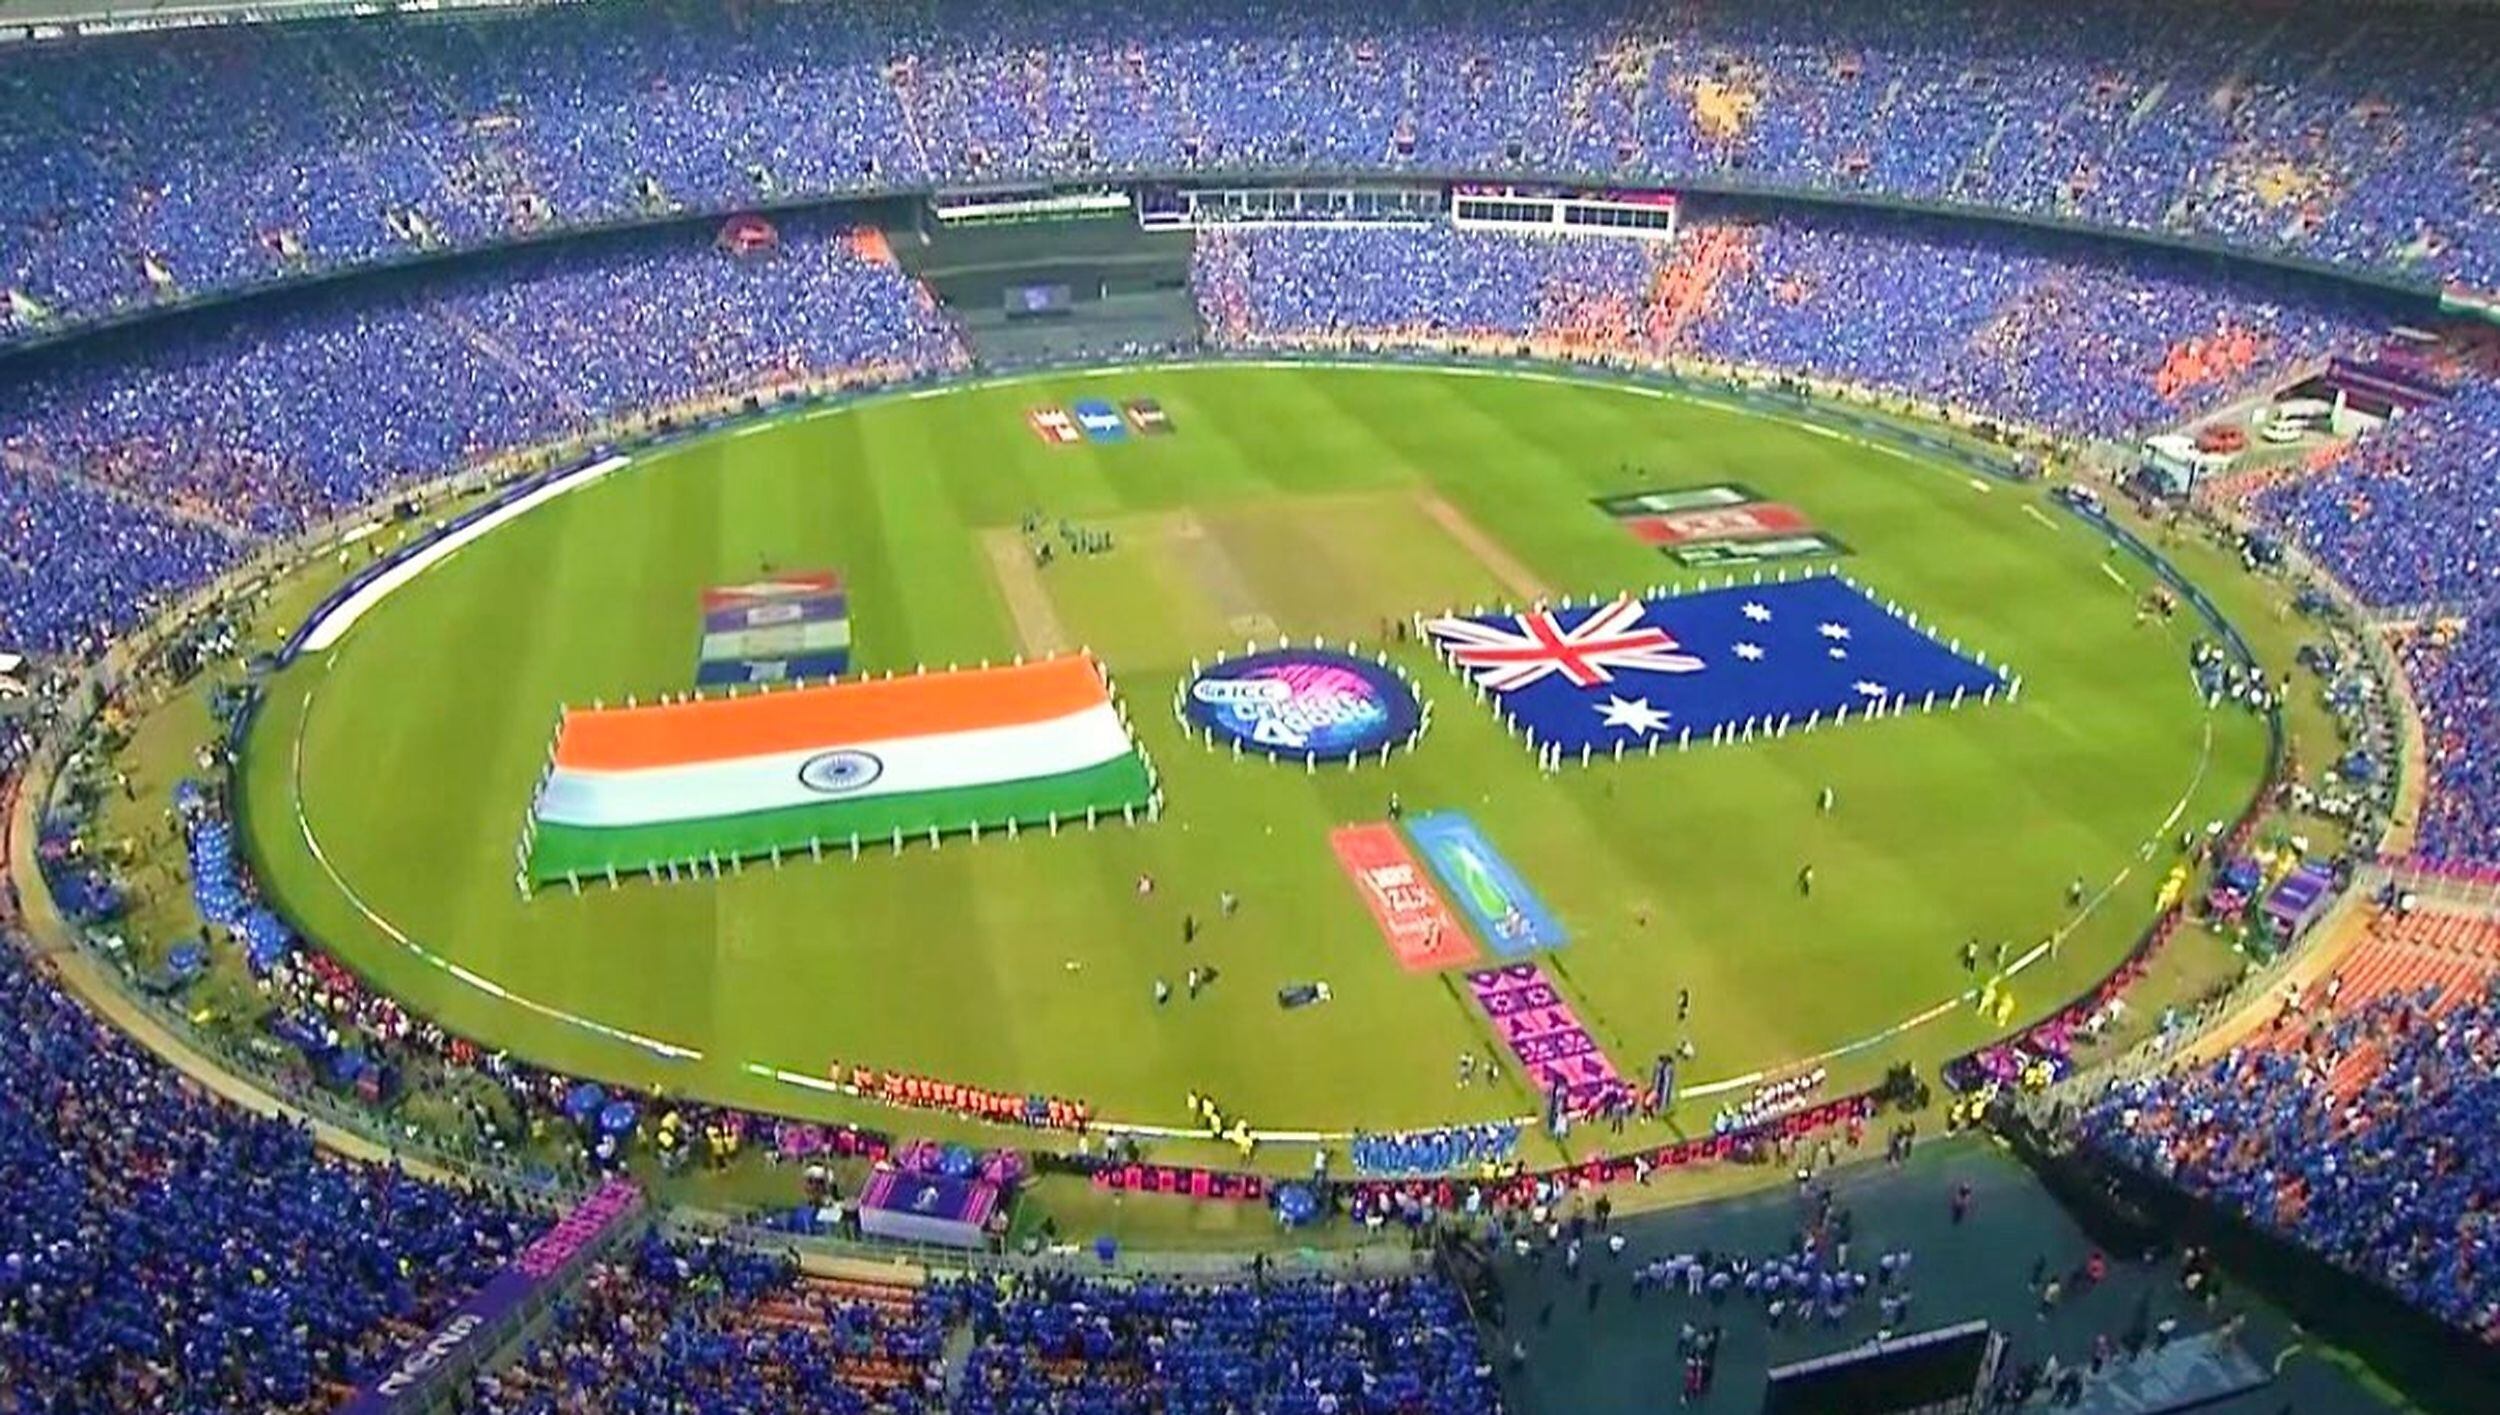 El fenómeno del cricket: una final mundialista con 132.000 hinchas y el superclásico India - Pakistán como cuestión de estado